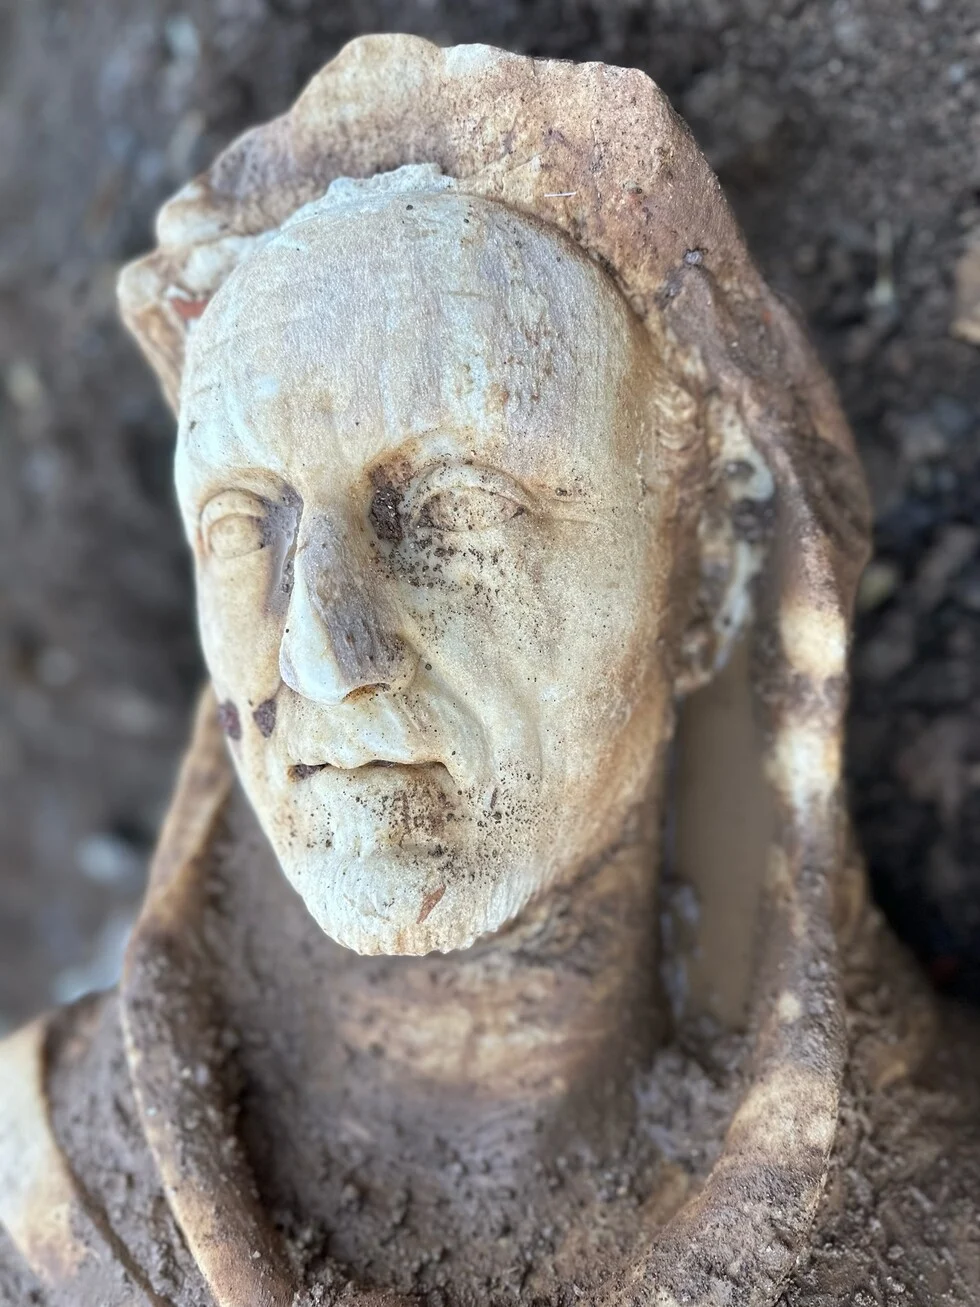 Ρωμαϊκό άγαλμα του Ηρακλή βρέθηκε σε σύστημα αποχέτευσης